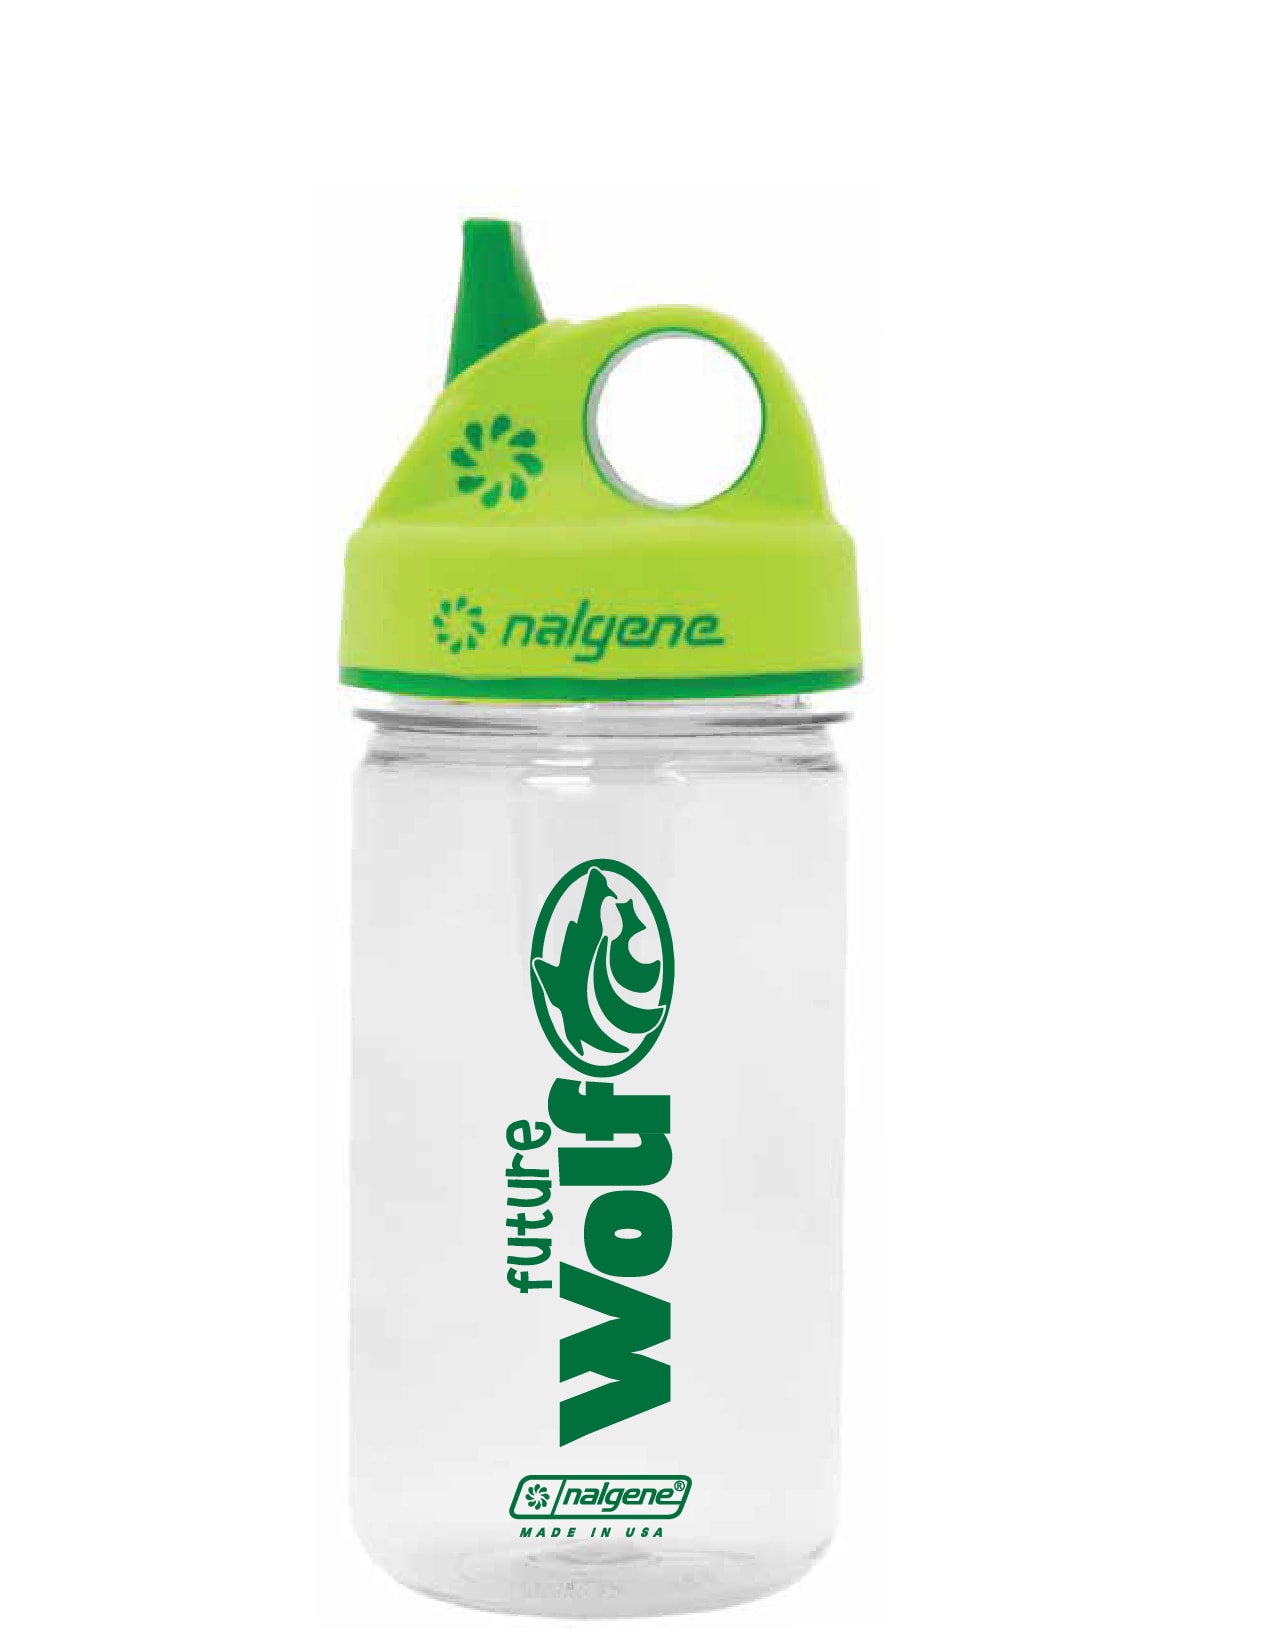 Kids Nalgene Water Bottle - 12oz